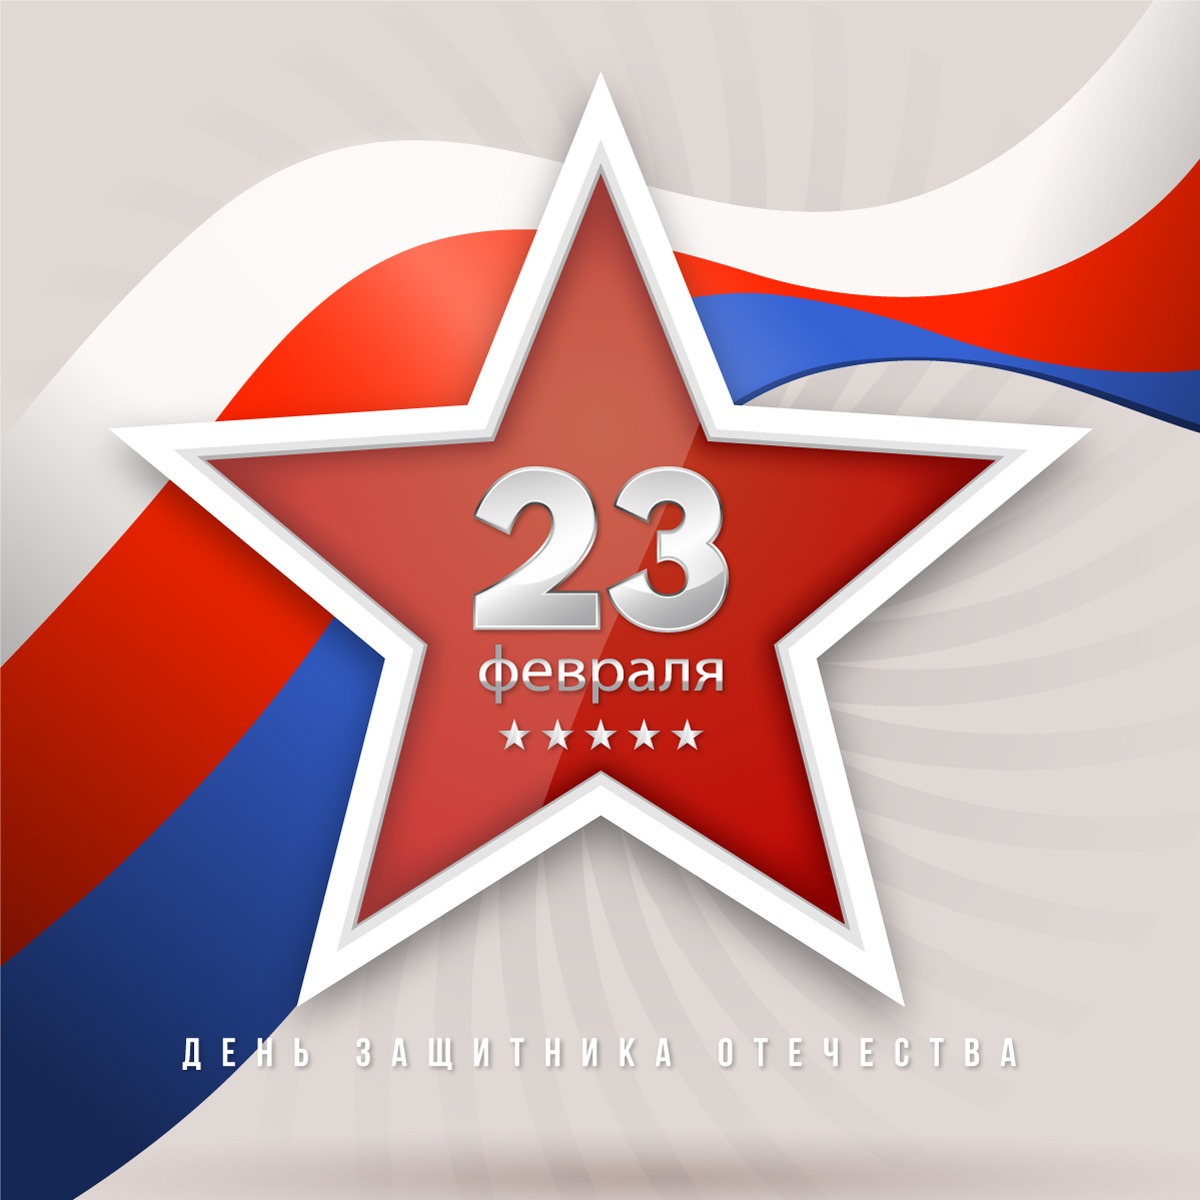 Квадратная открытка со звездой на фоне флага России